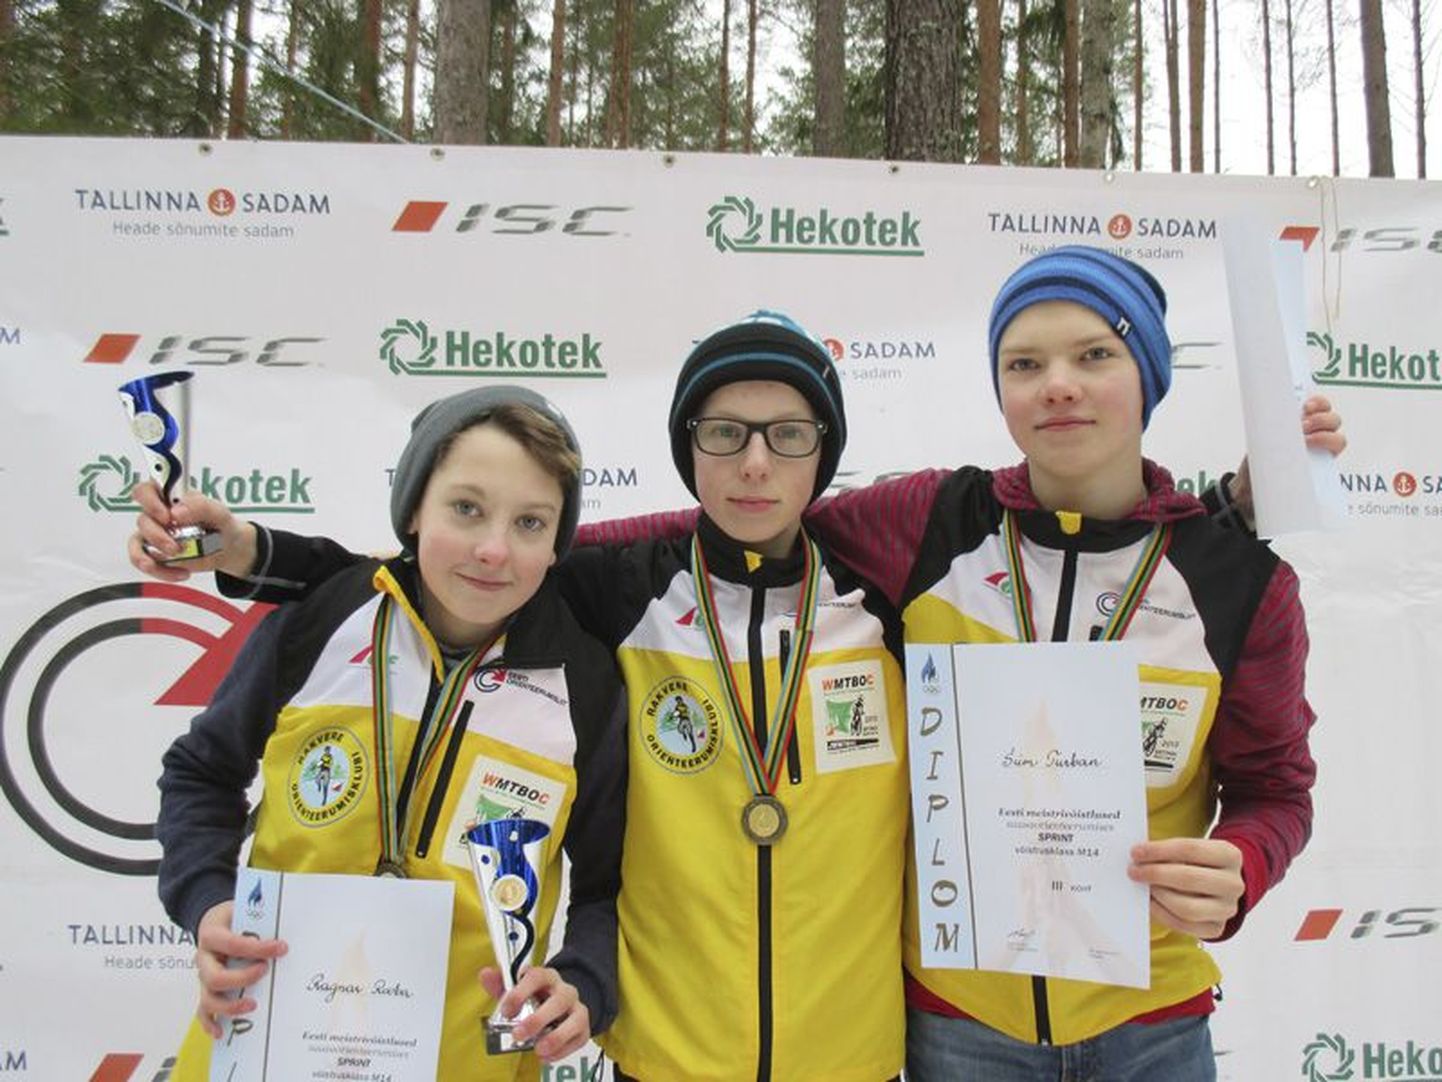 Rakvere orienteerumisklubi noored Ragnar Rooba (vasakult), Sander Pritsik ja Siim Turban saavutasid Eesti meistrivõistlustel kolmikvõidu.